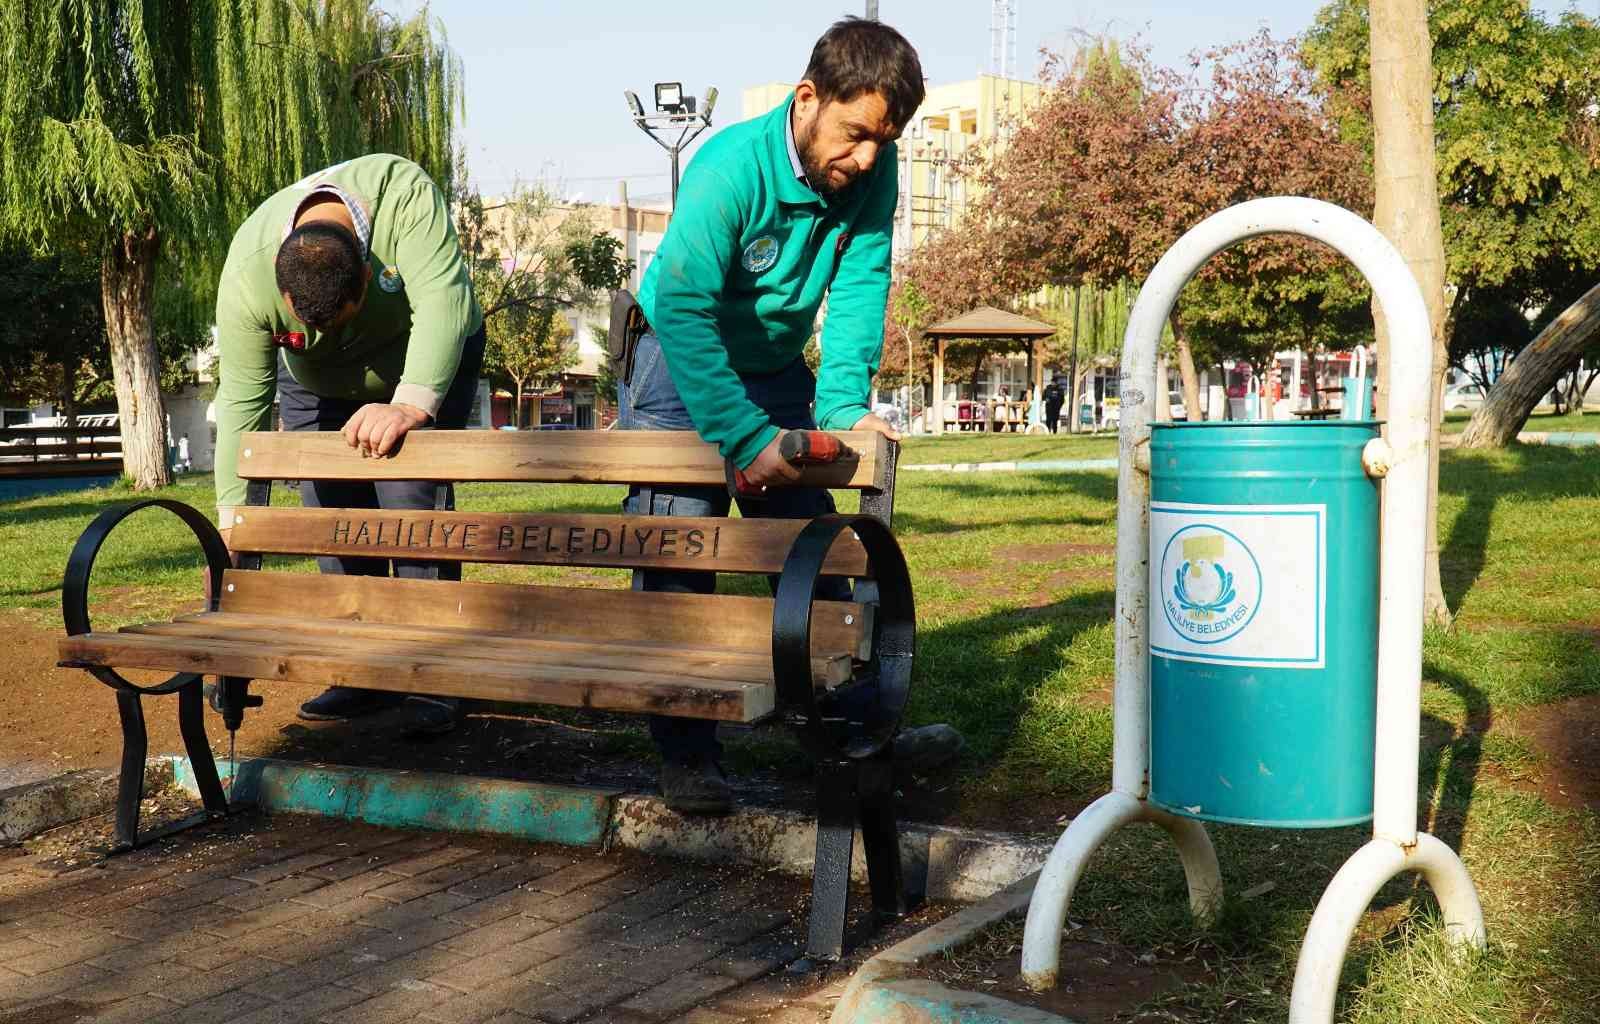 Haliliye’de parklarda yenileme çalışmaları #sanliurfa